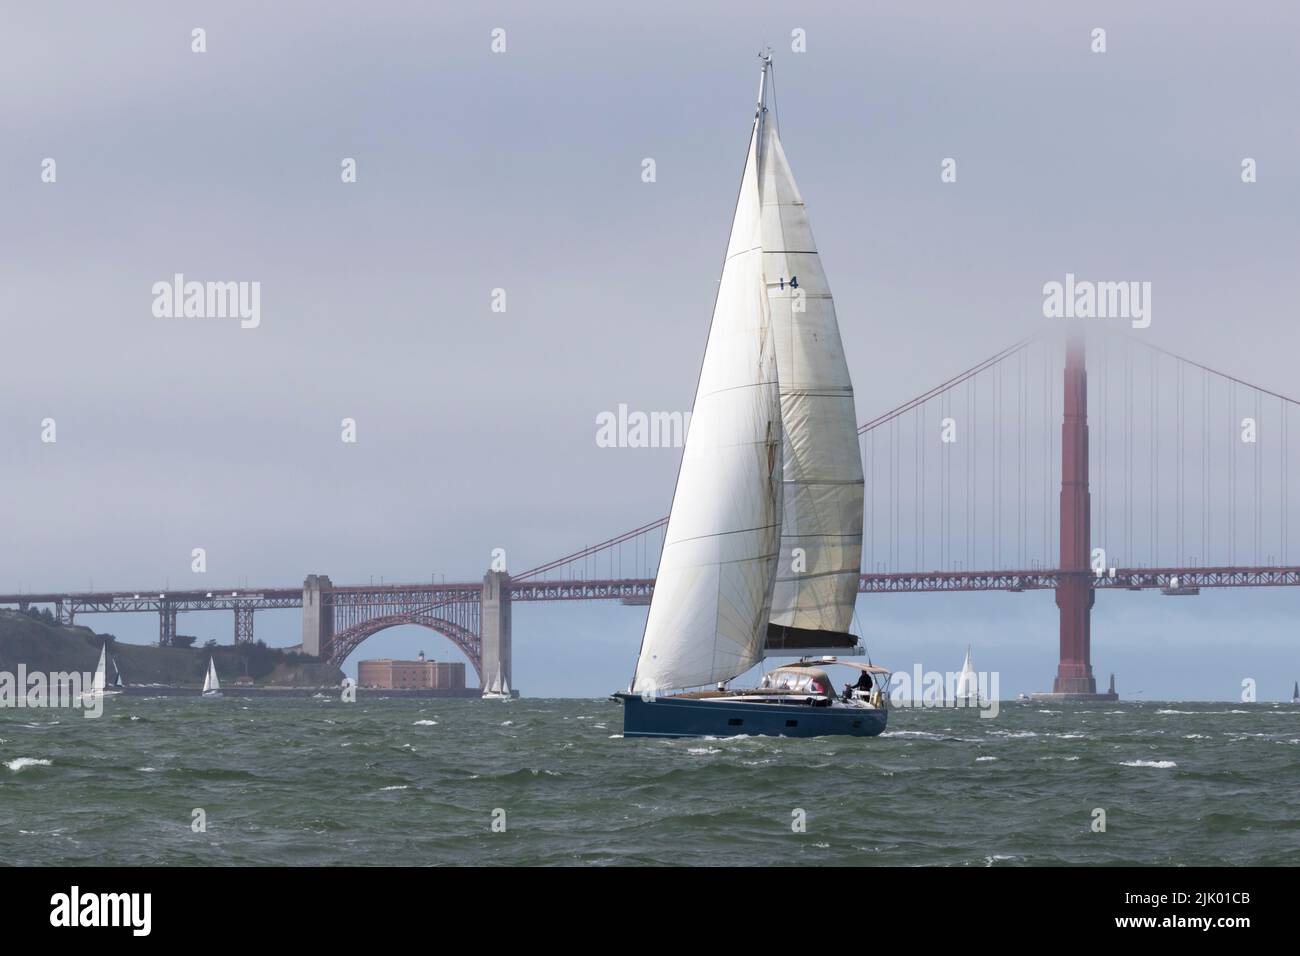 Un velero recorre las aguas de la Bahía de San Francisco. Foto de stock